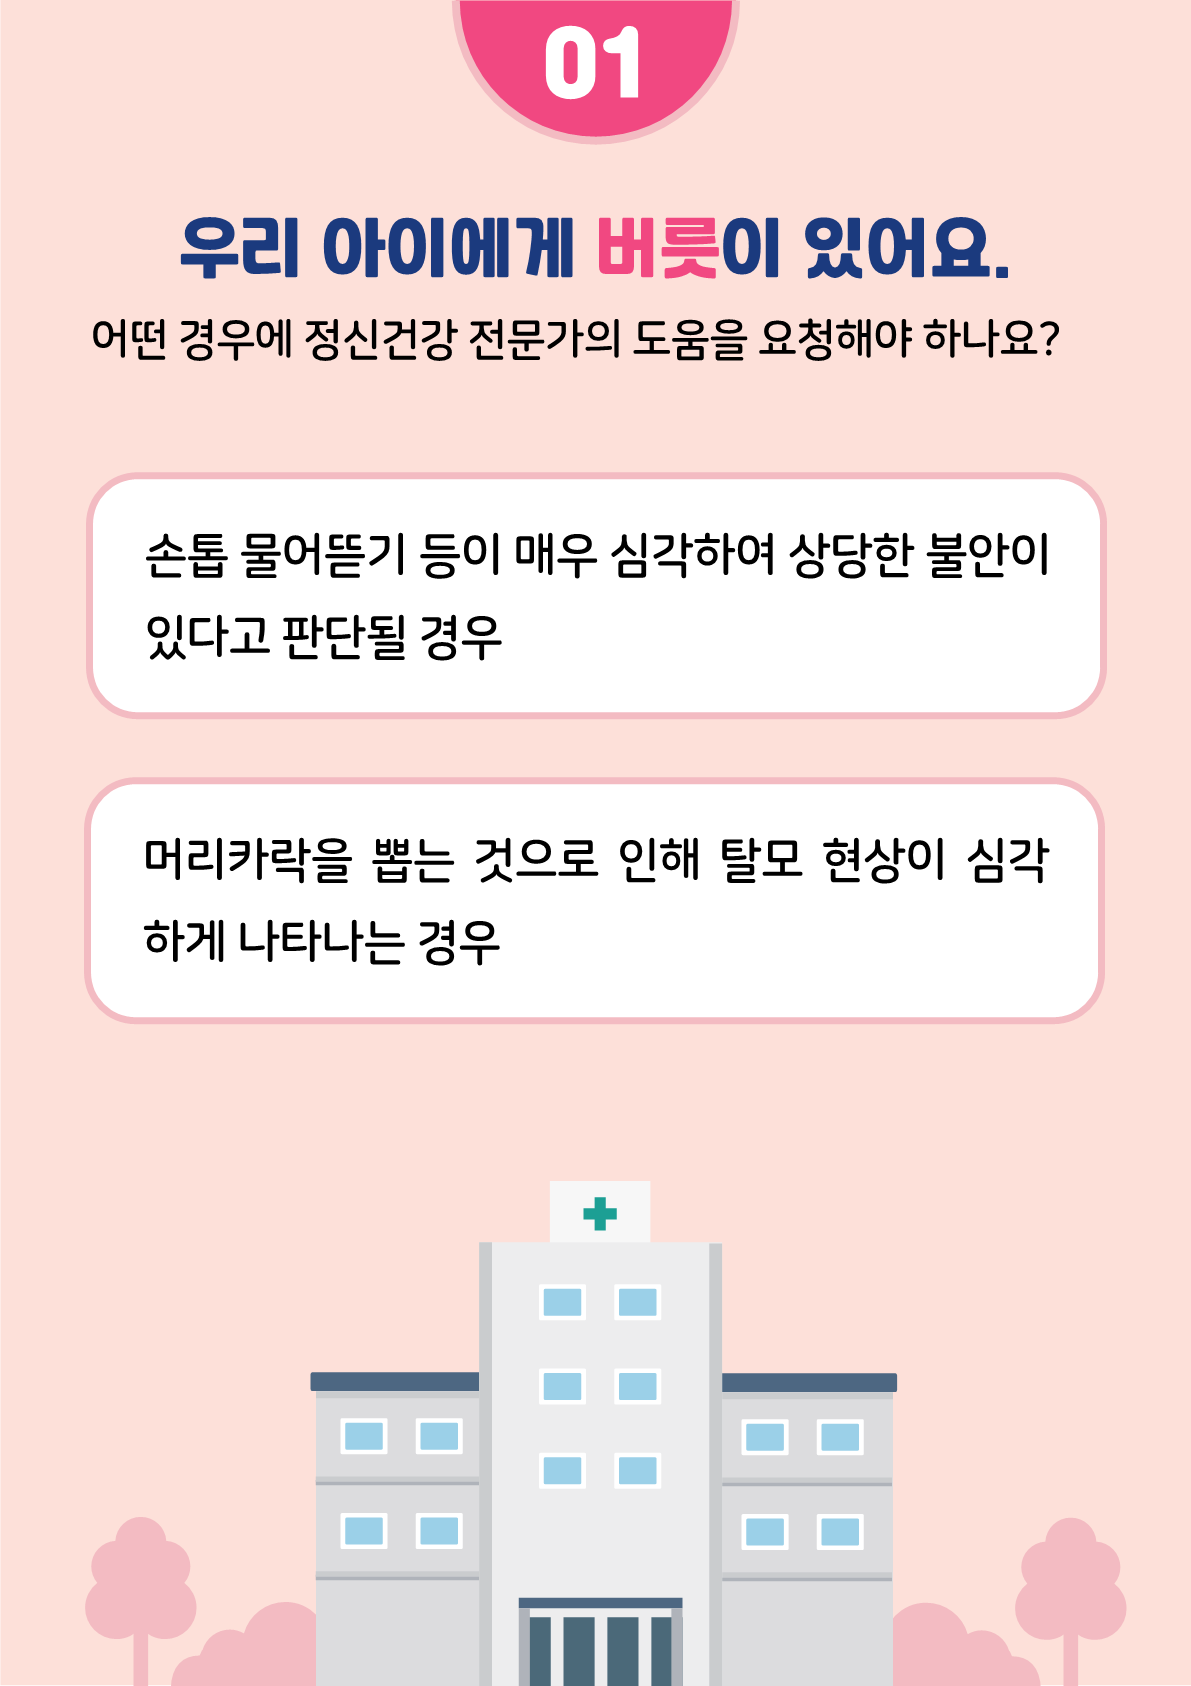 [붙임2]카드뉴스 제2021-5_틱장애(초등학부모용)_5.png